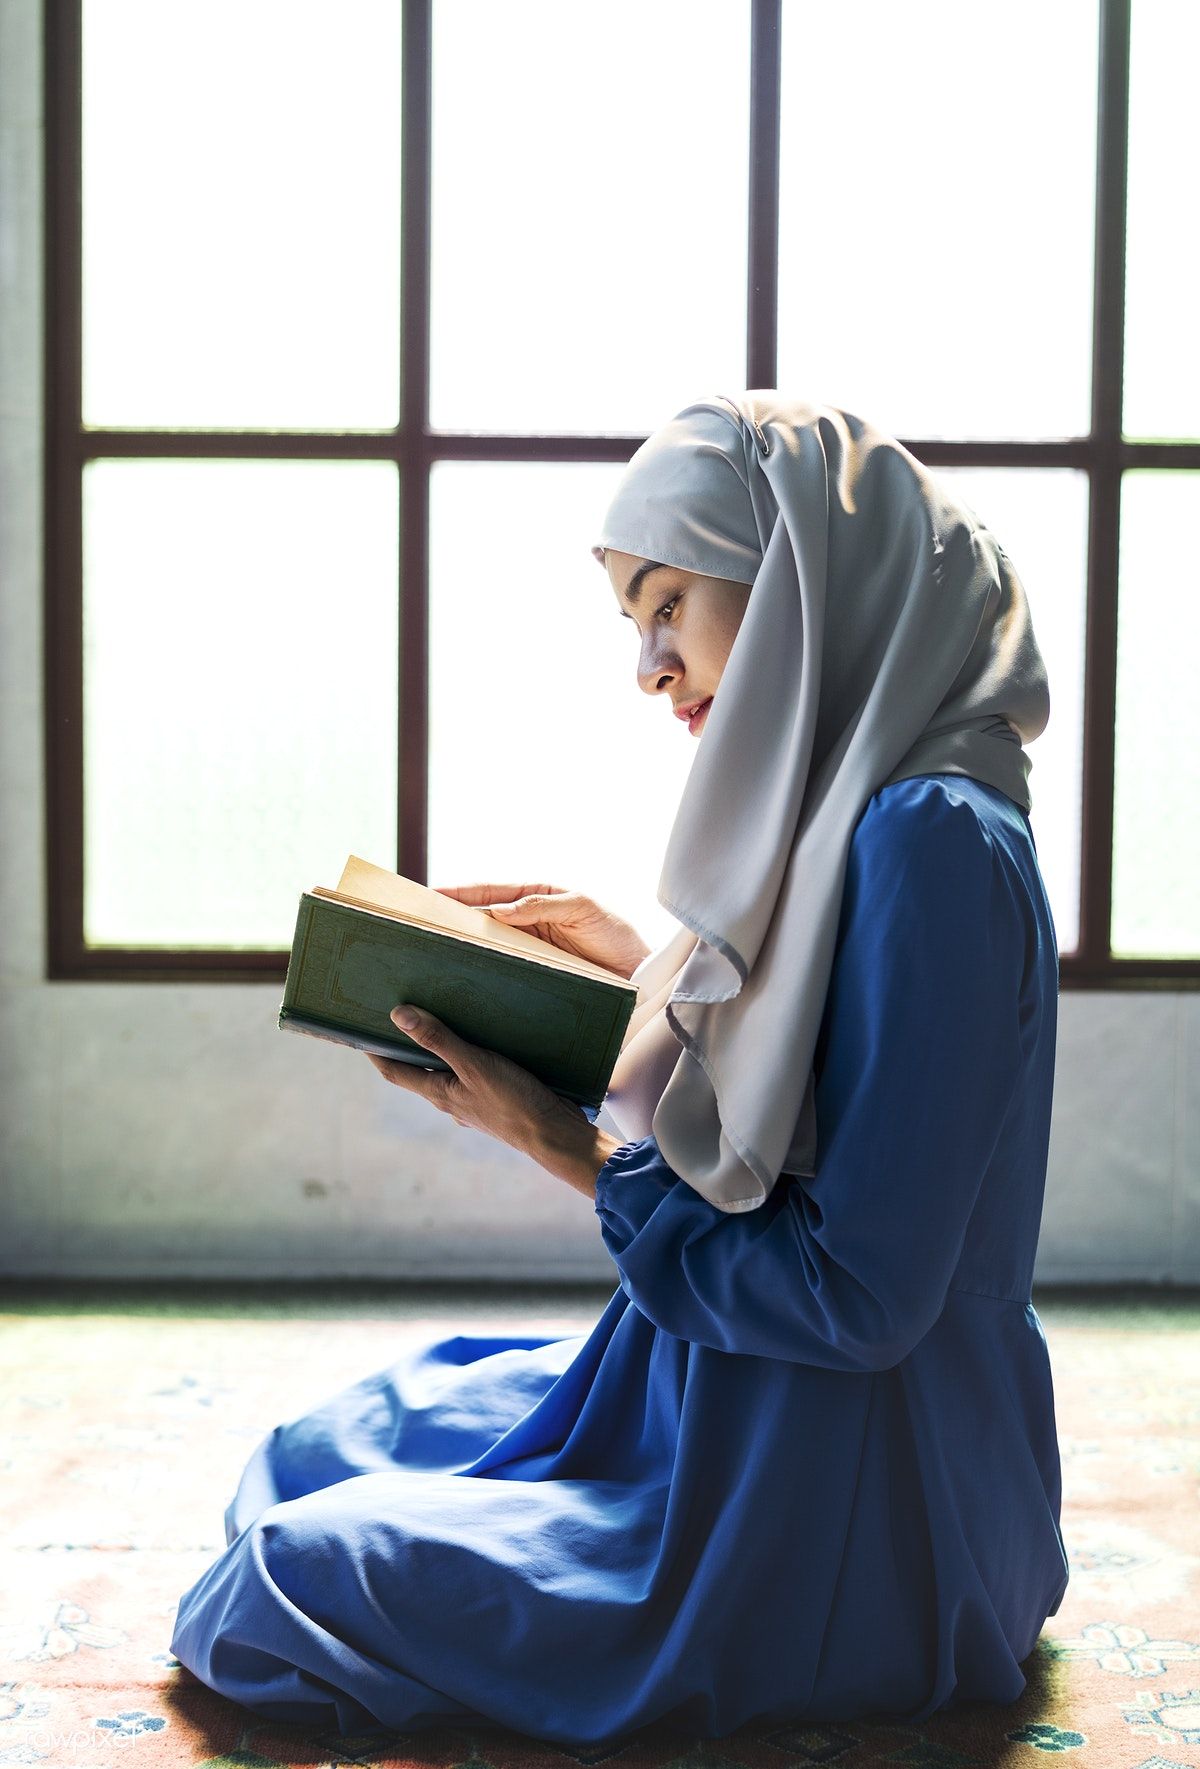 خواندن قرآن بدون حجاب